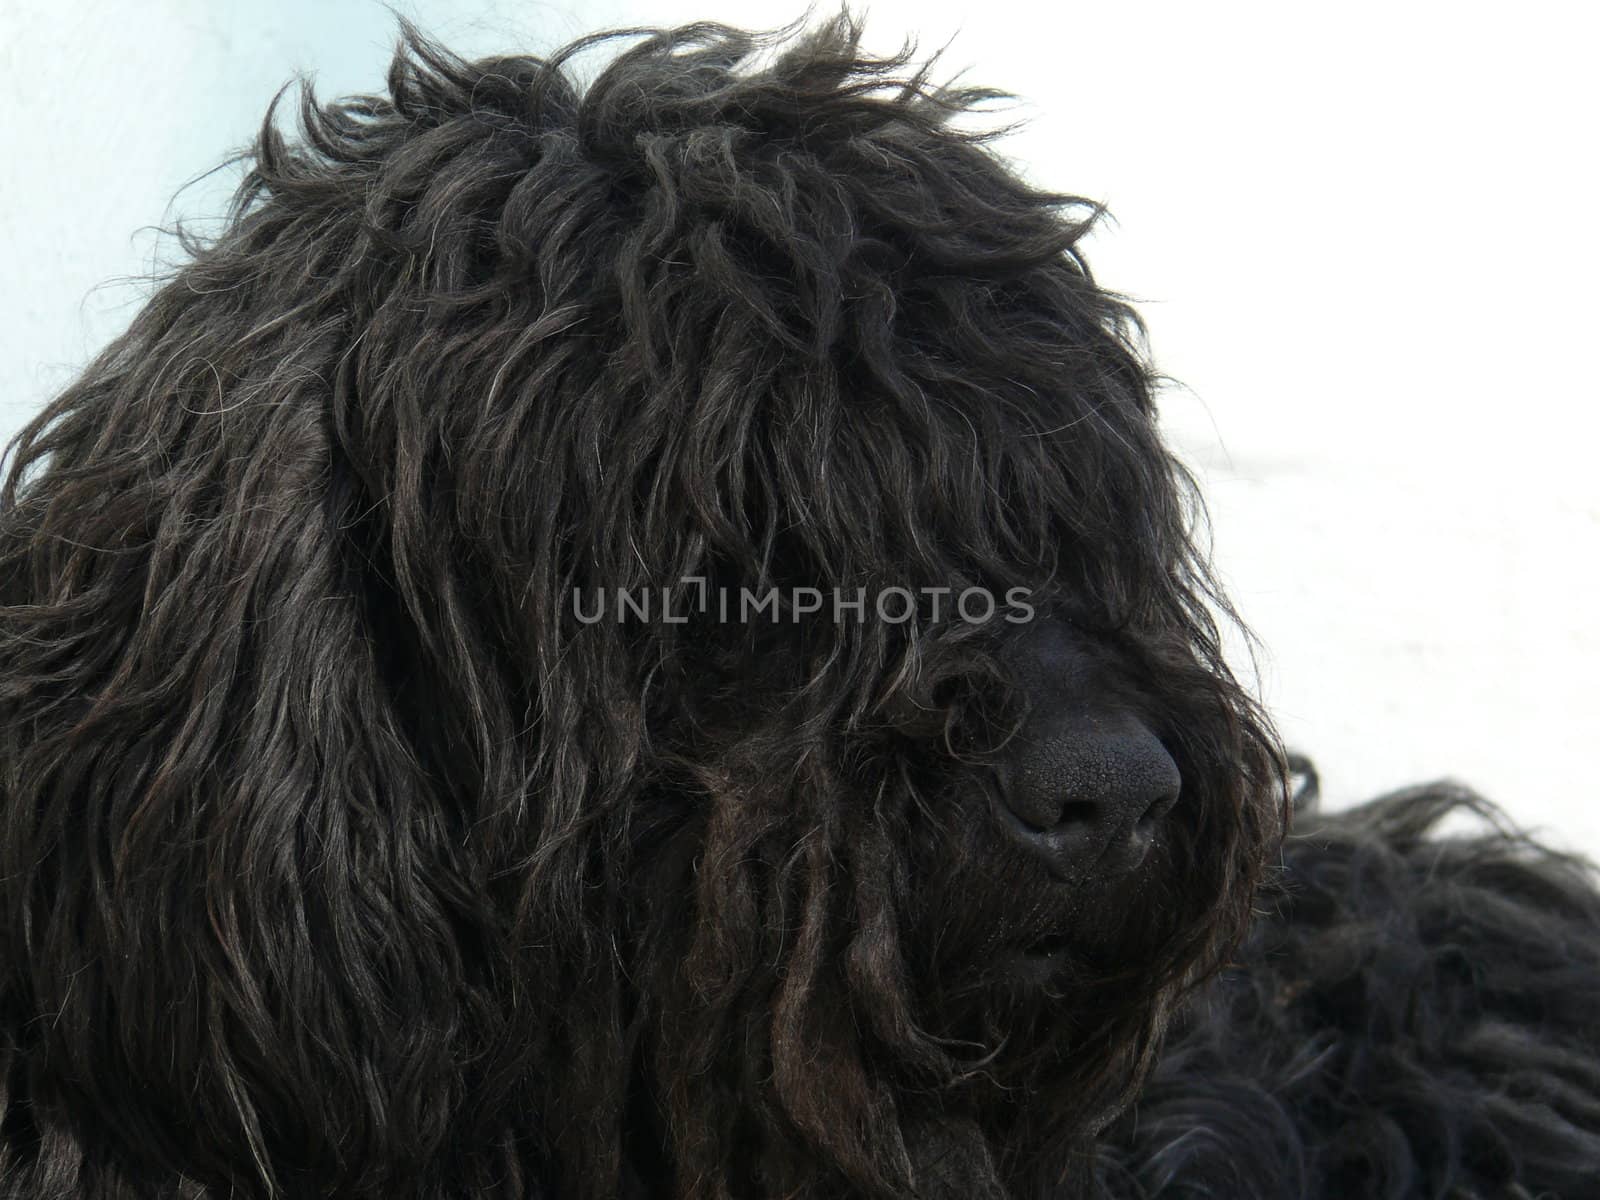 Black shaggy dog by Stoyanov